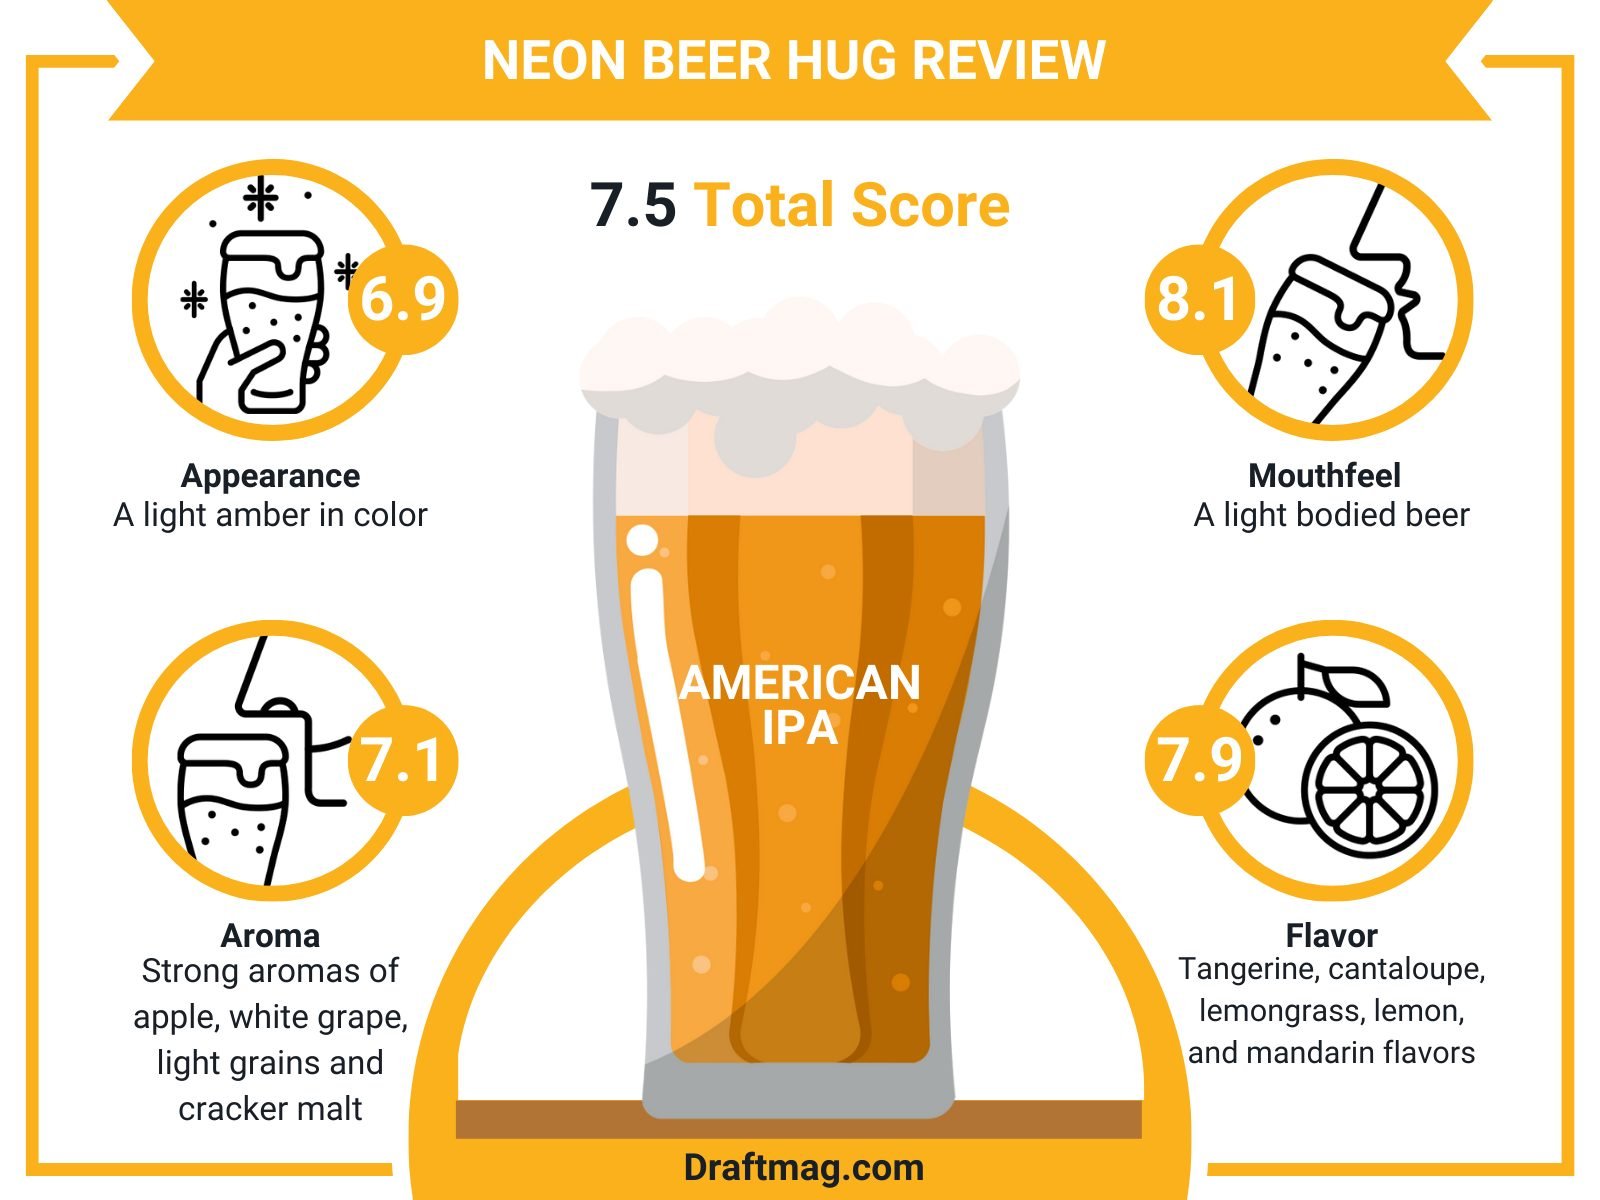 Neon Beer Hug Review Infographic